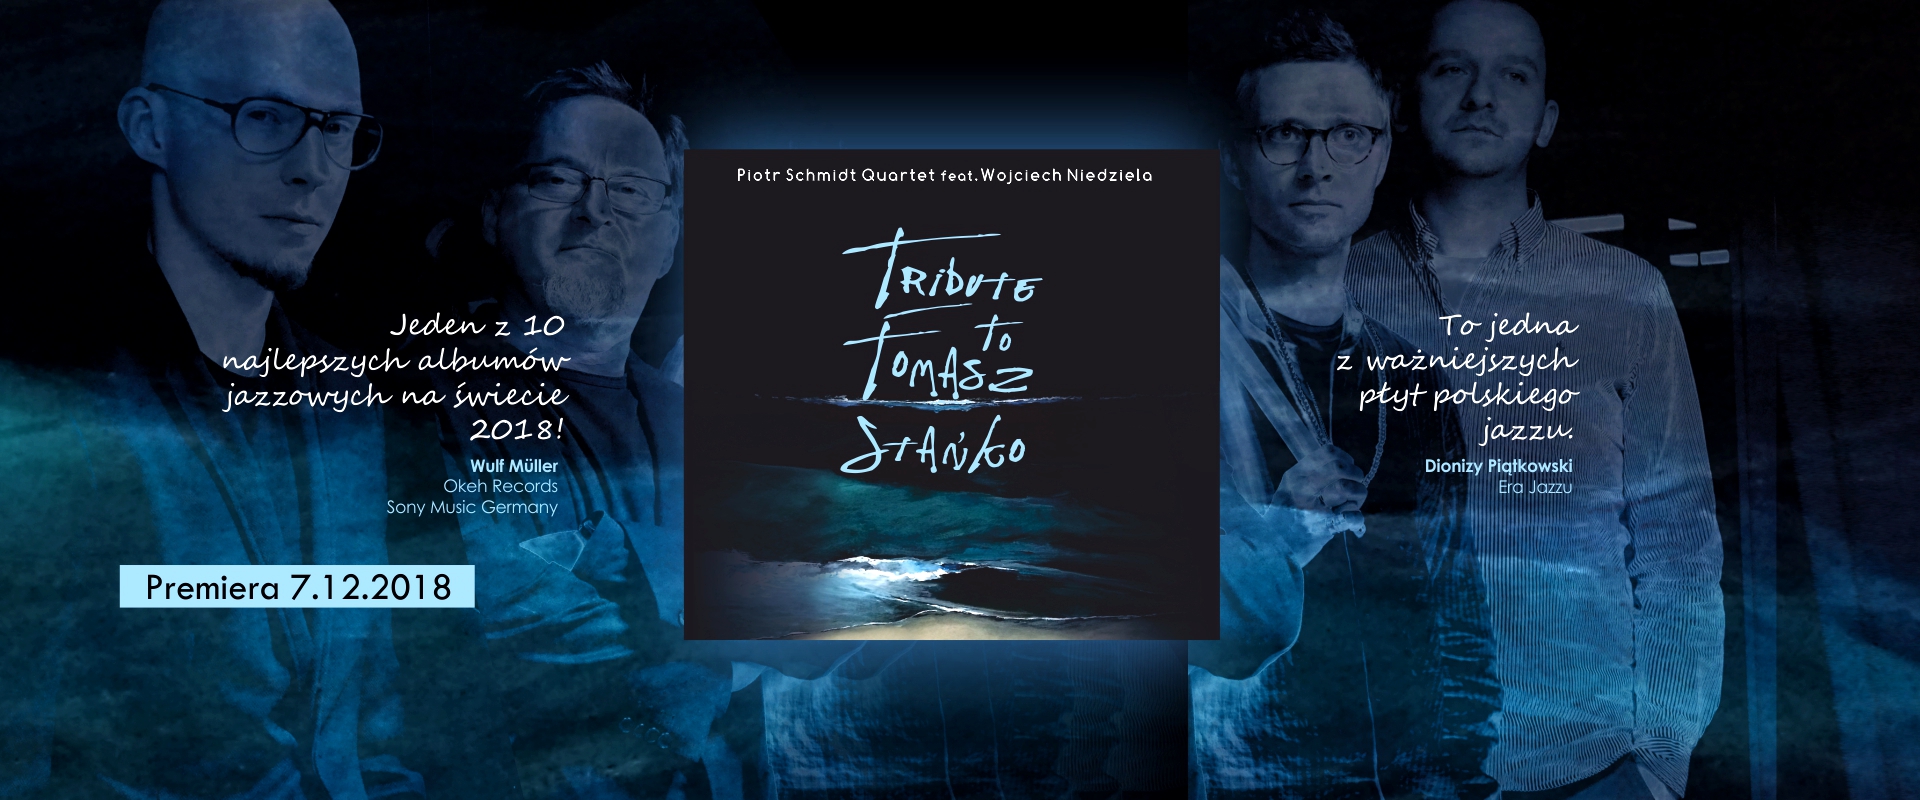 Piotr Schmidt Quartet feat. Wojciech Niedziela - Tribute To Tomasz Stańko